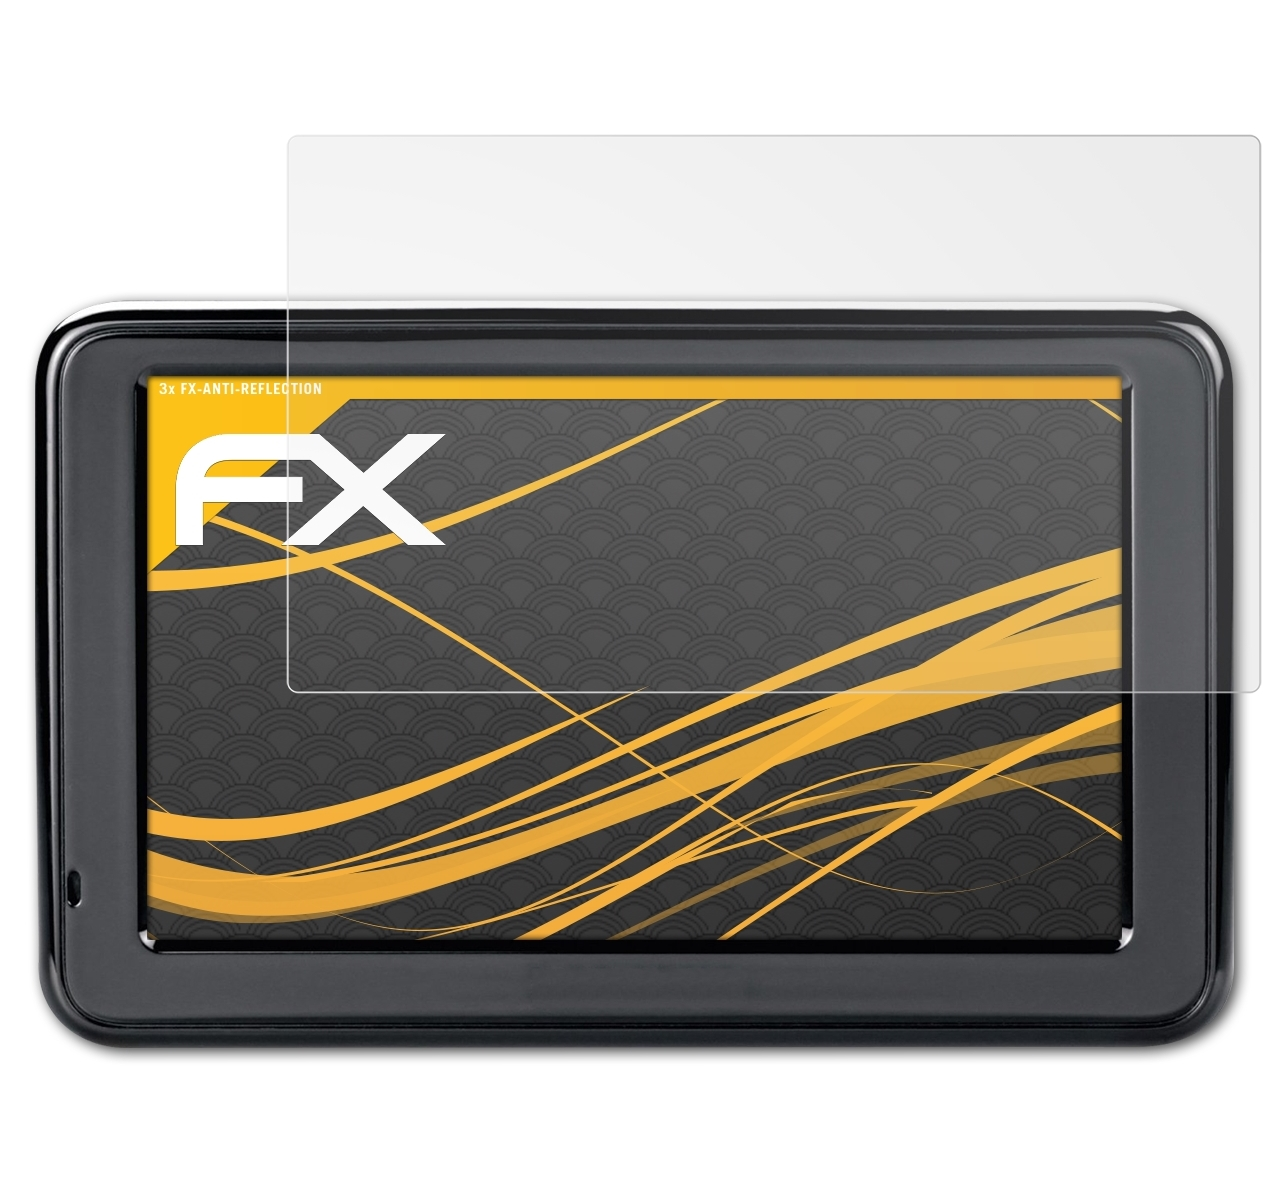 FX-Antireflex Garmin Displayschutz(für 2445) nüvi 3x ATFOLIX